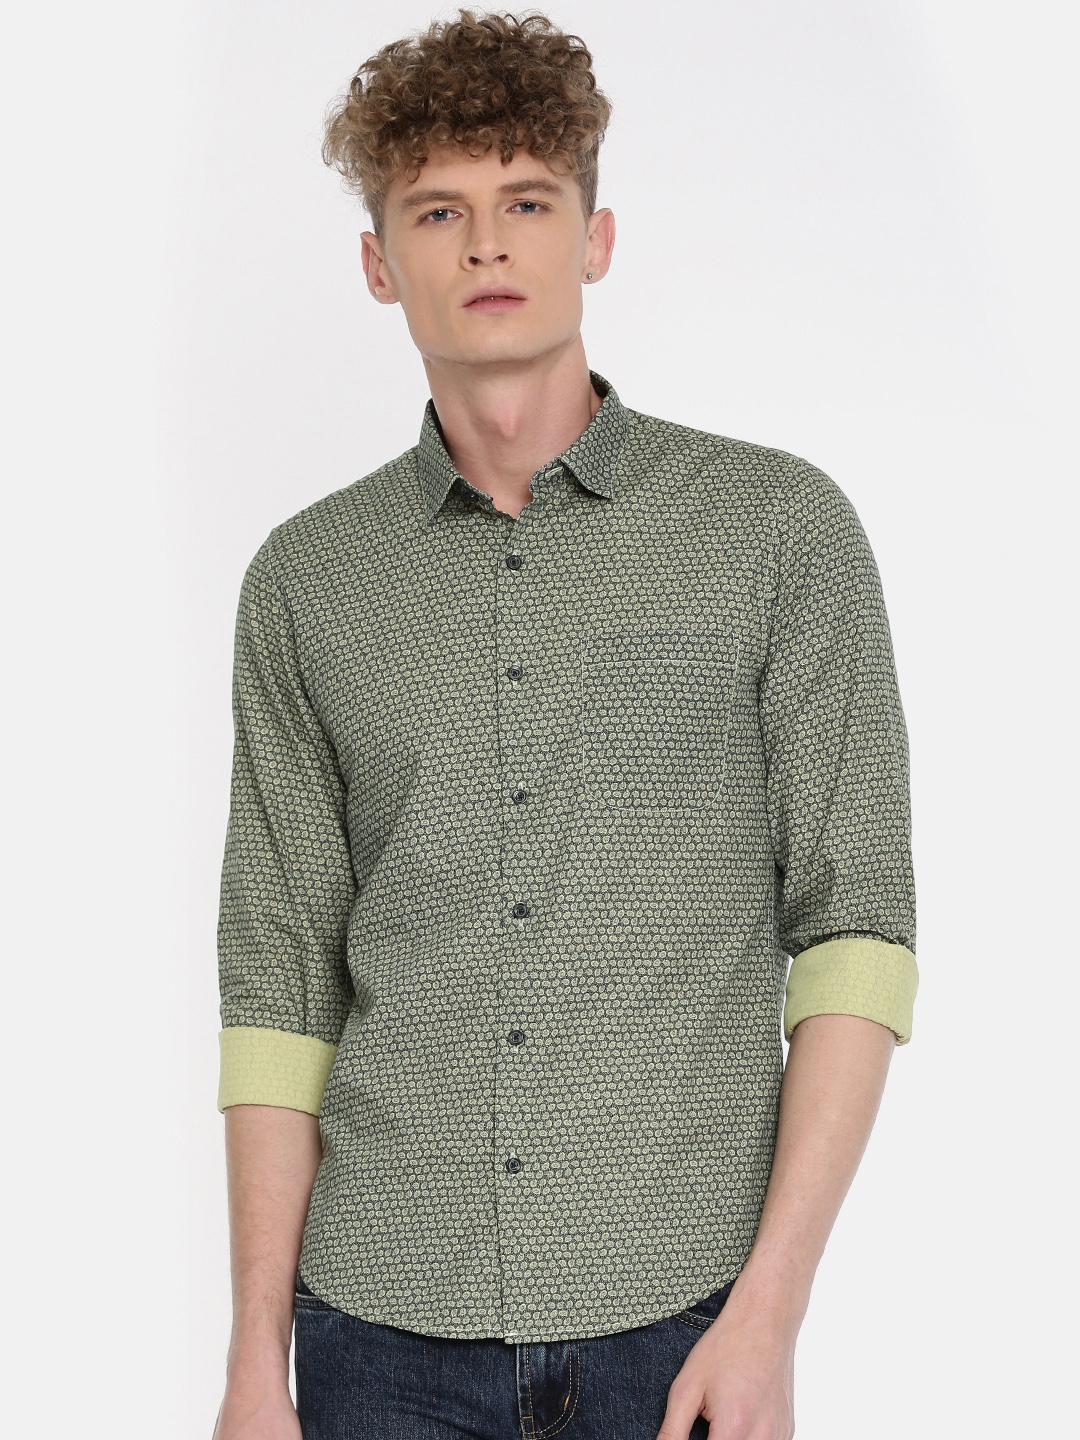 Buy Peter England Casuals Men Green Slim Fit Printed Semiformal Shirt ...